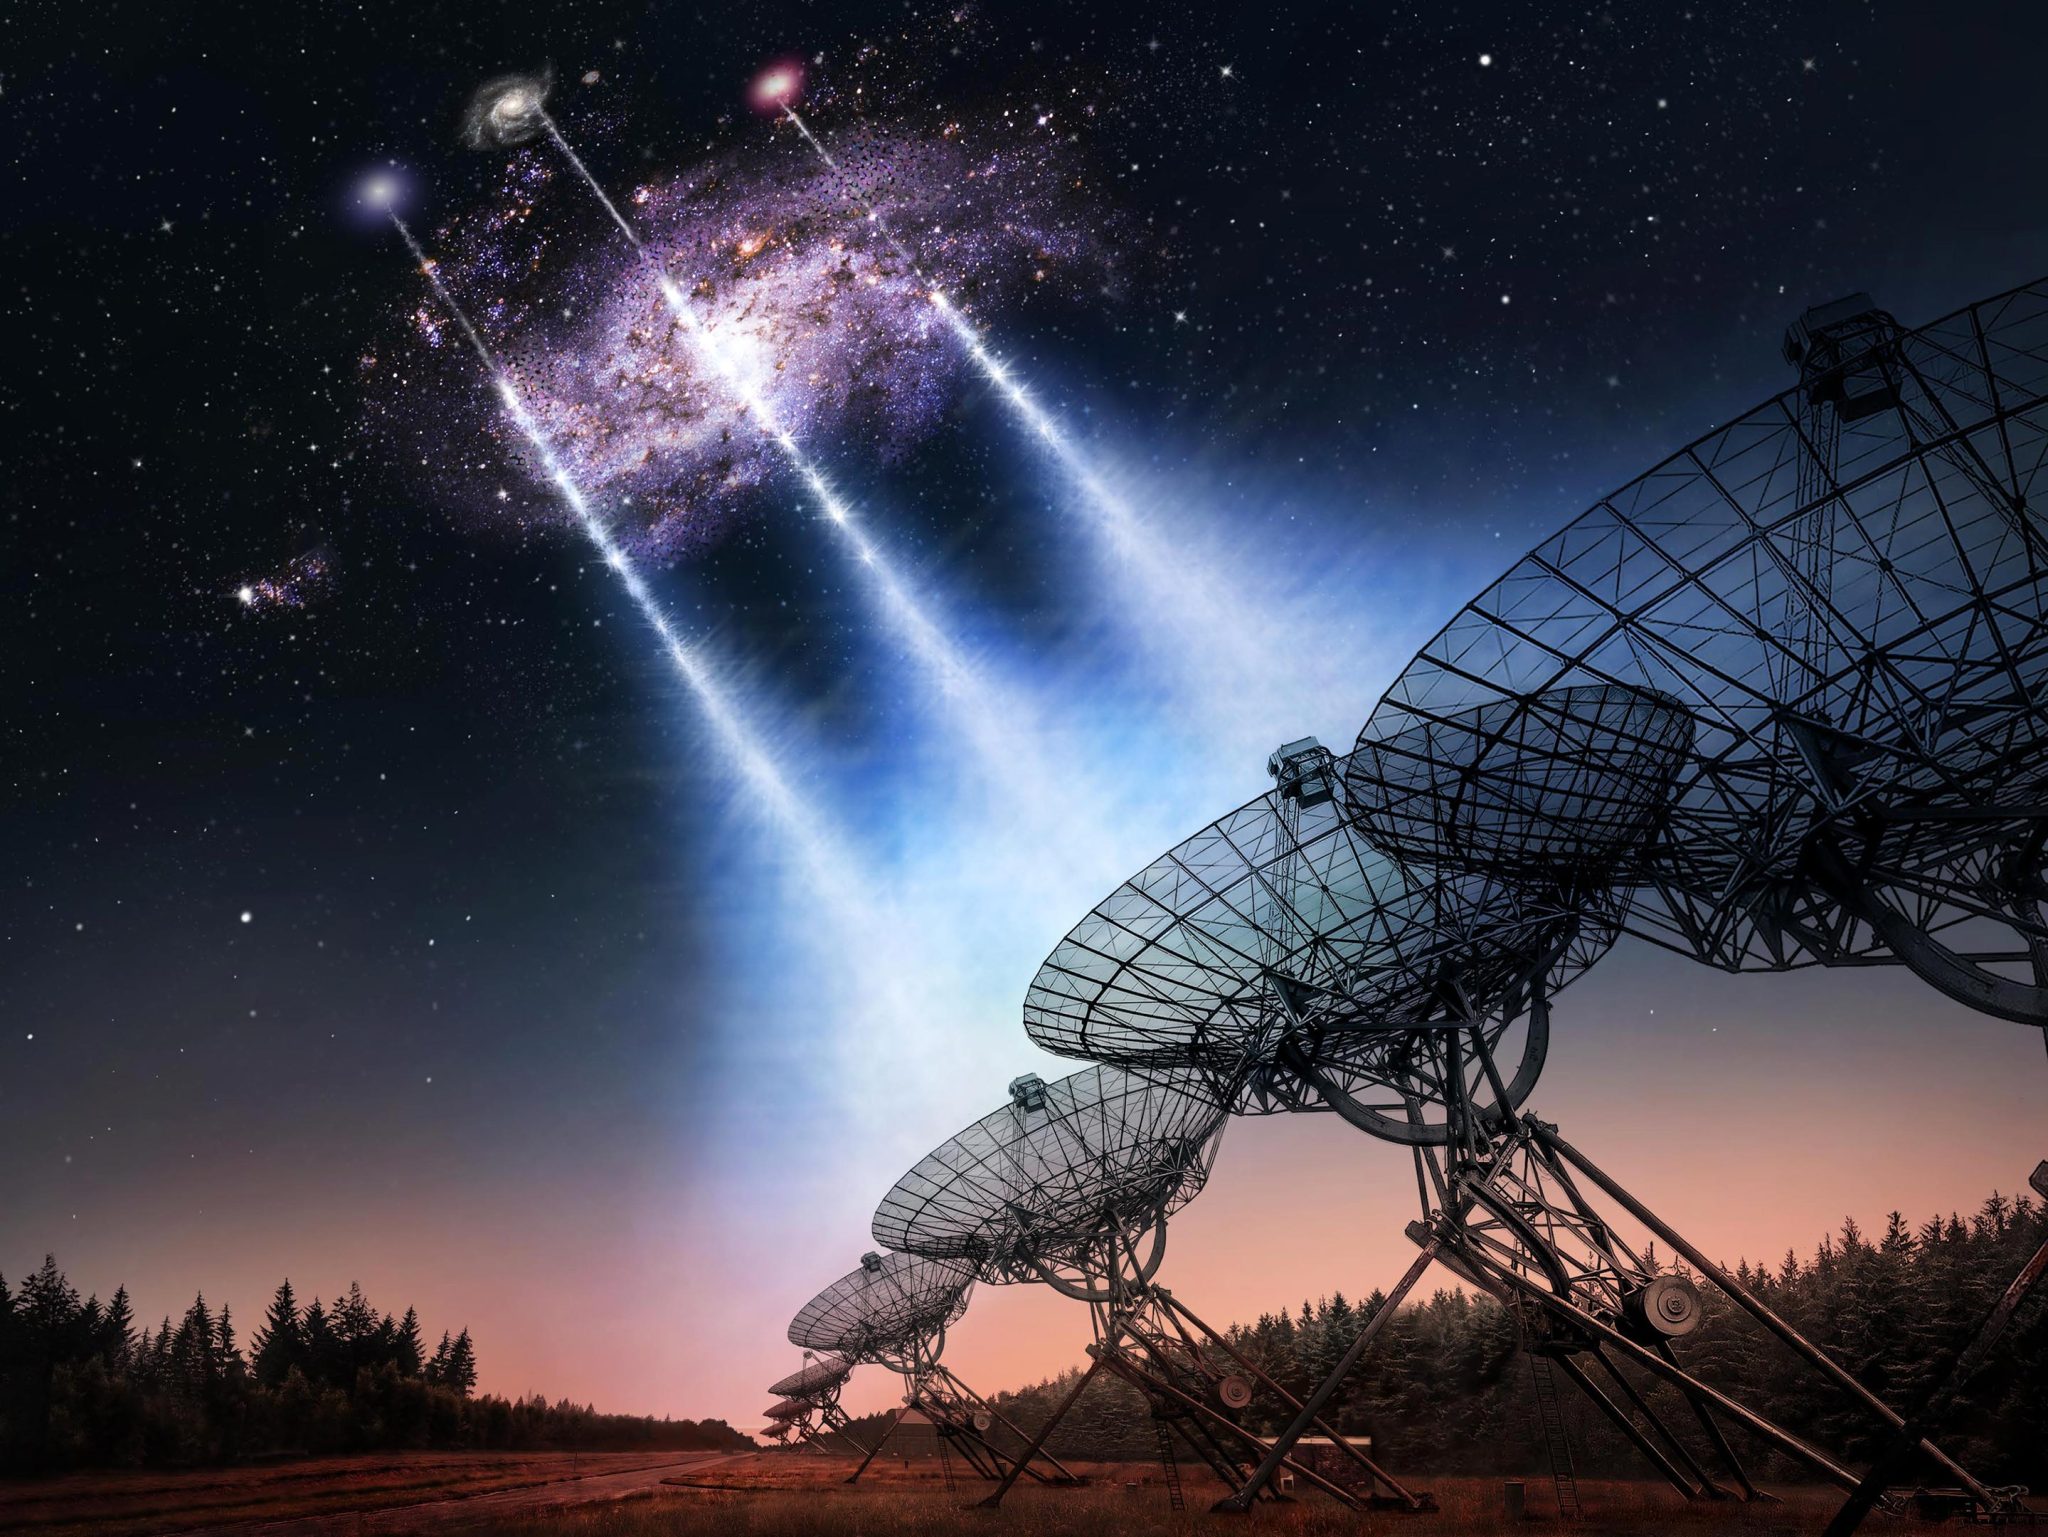 Gli astronomi stanno rilevando lampi radio estremamente potenti e veloci che deviano una galassia vicina